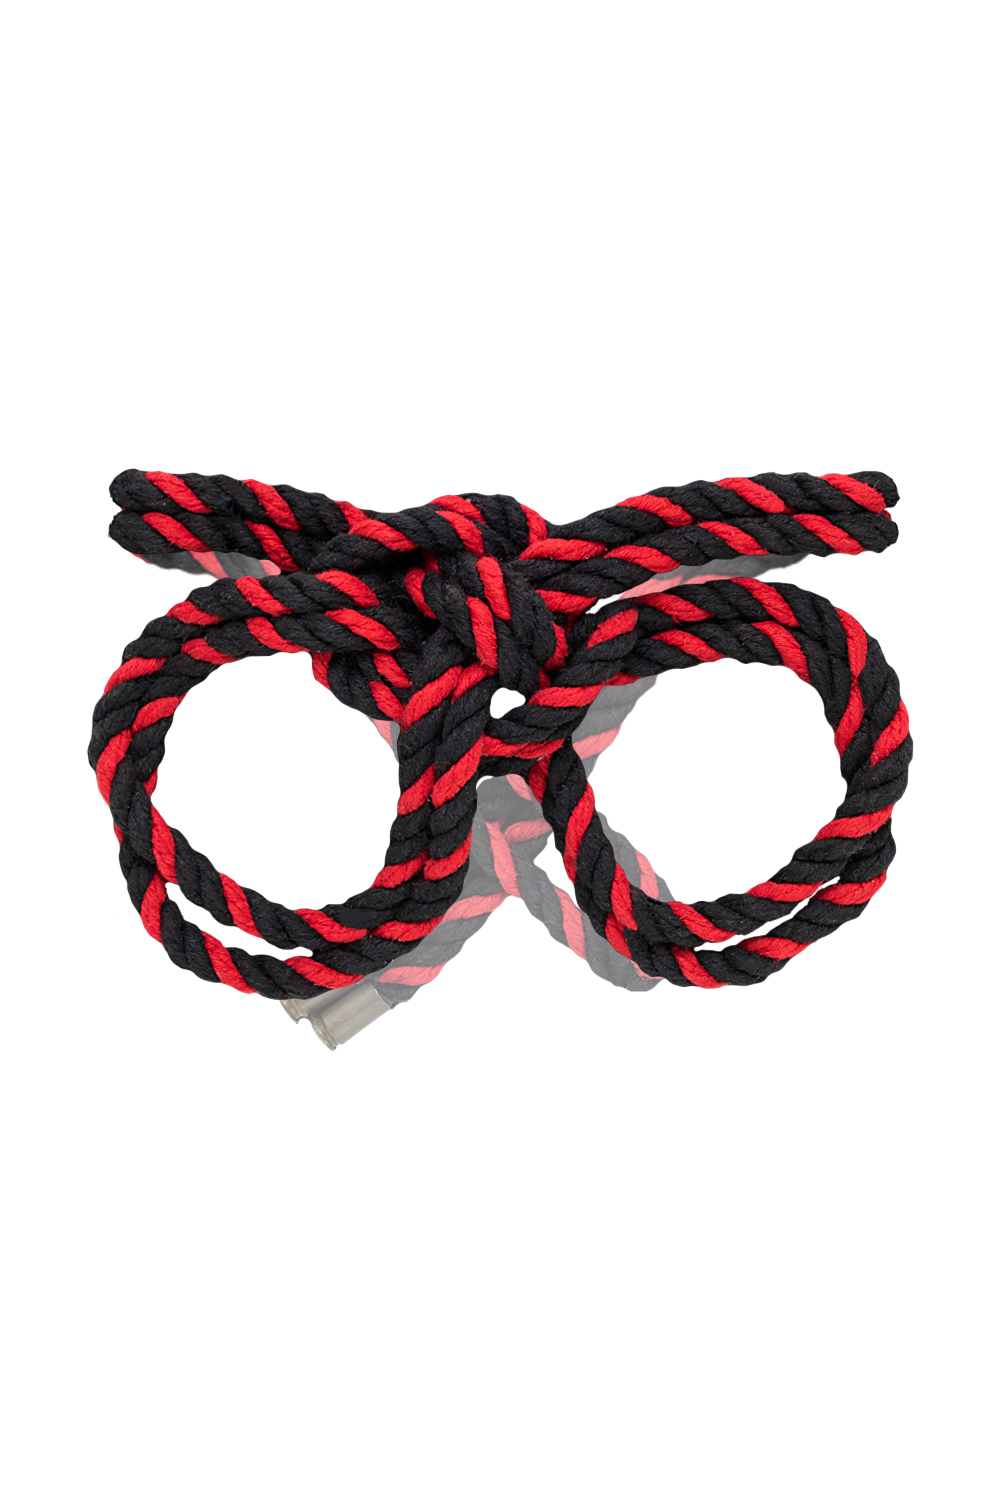 Наручники-оковы Pecado BDSM Узел-альфа из хлопковой веревки черно-красные 3,3 м